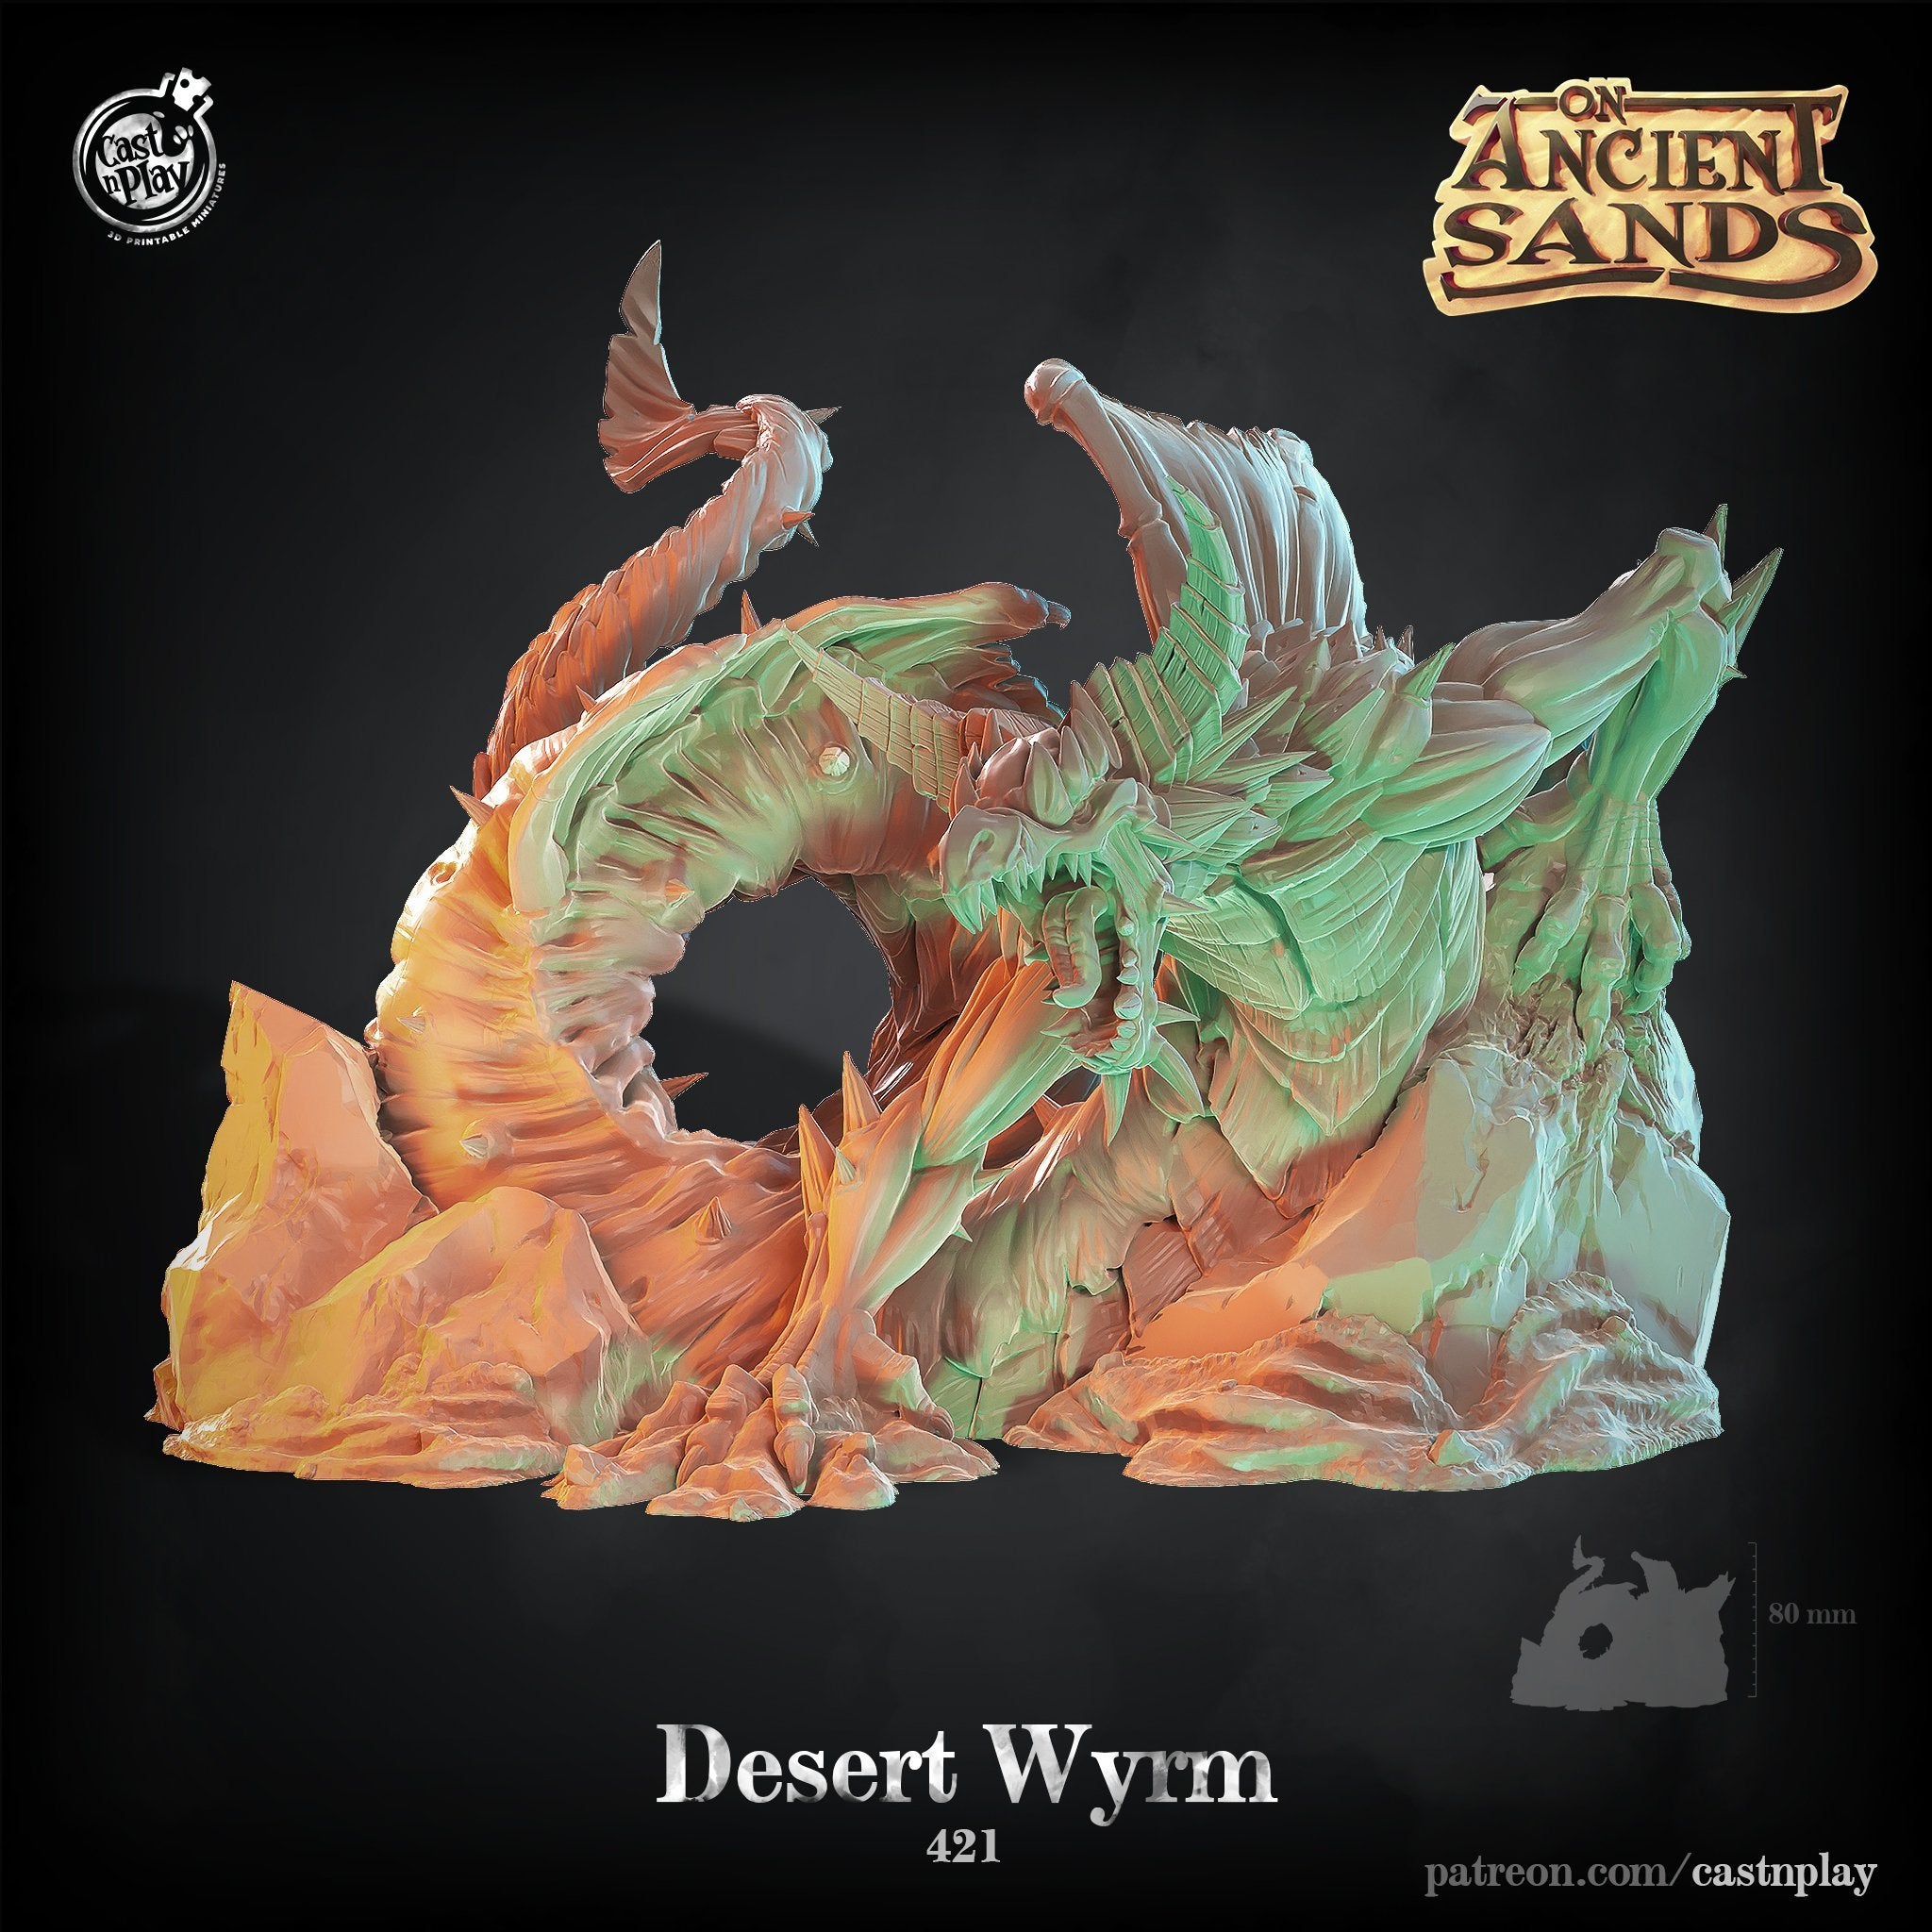 Desert Wyrm - The Printable Dragon